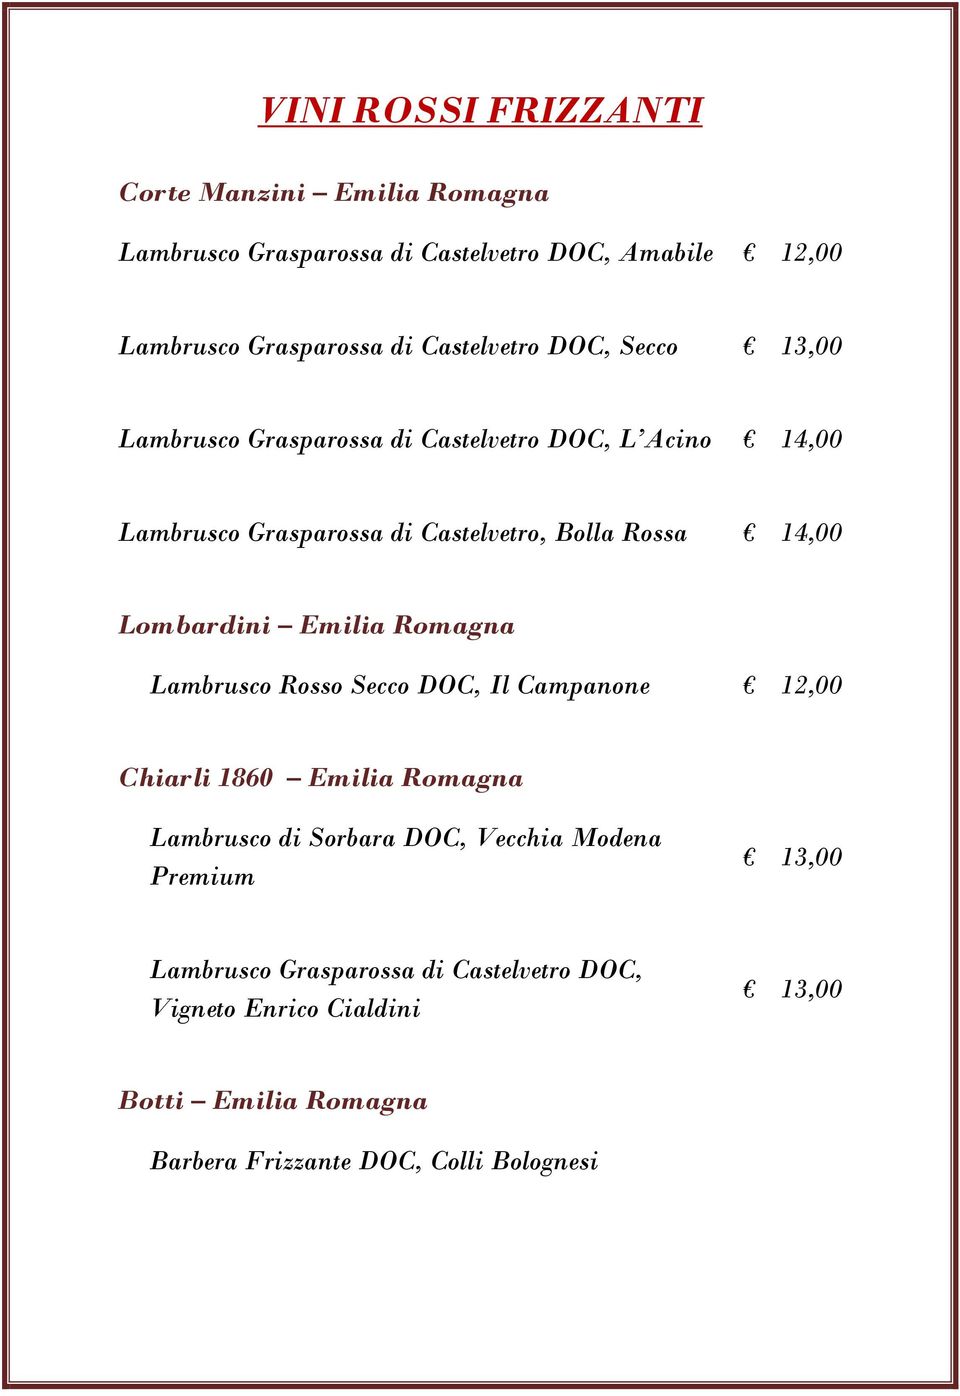 14,00 Lombardini Emilia Romagna Lambrusco Rosso Secco DOC, Il Campanone 12,00 Chiarli 1860 Emilia Romagna Lambrusco di Sorbara DOC, Vecchia